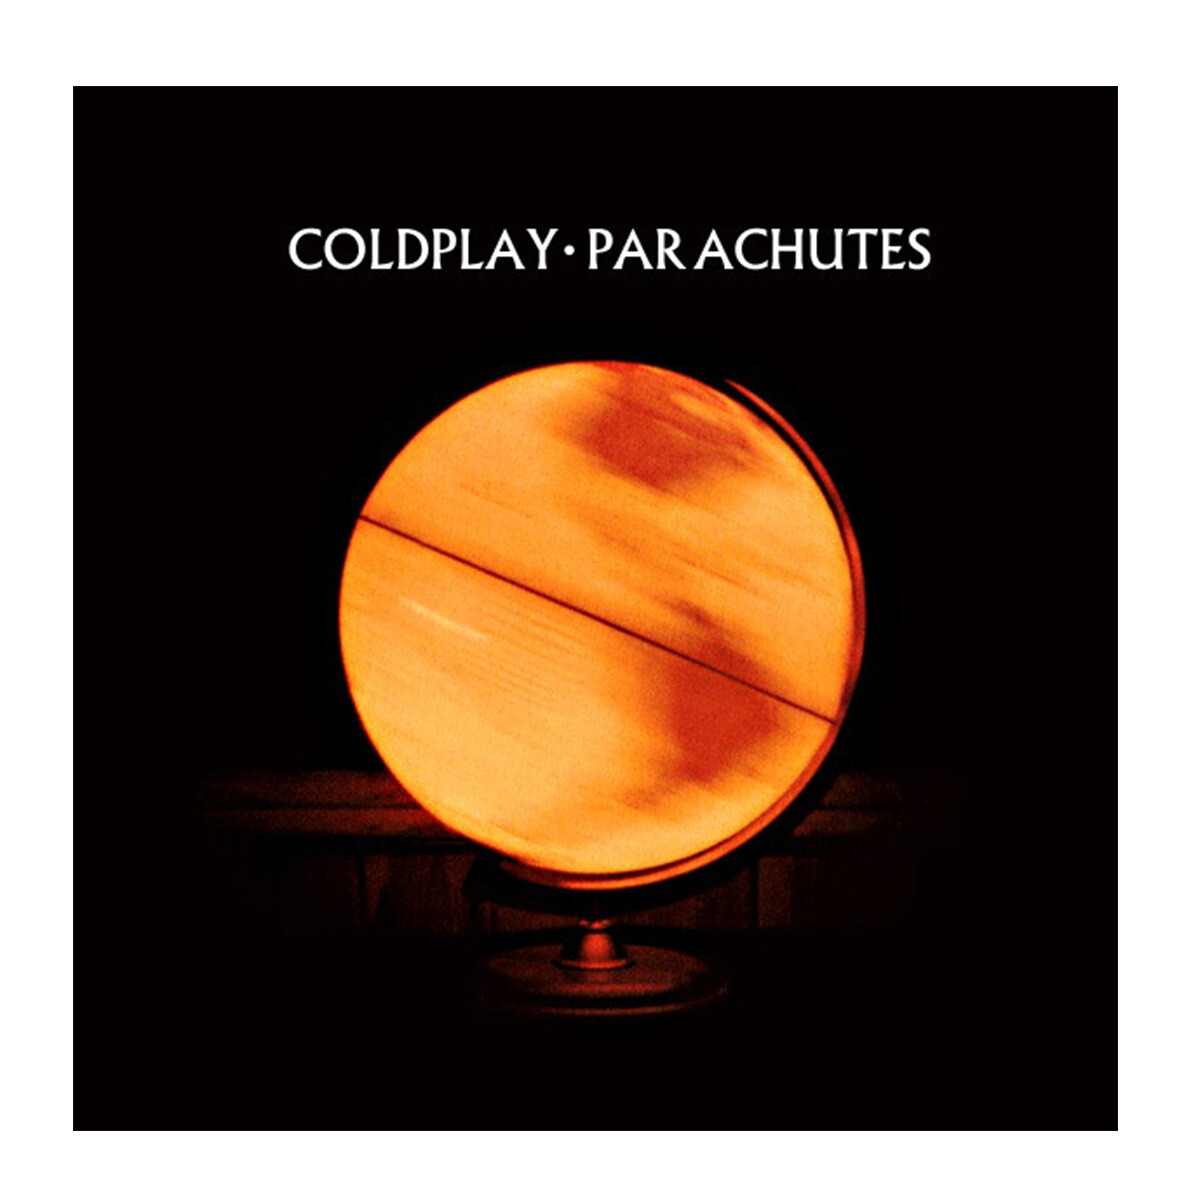 Coldplay-parachutes 